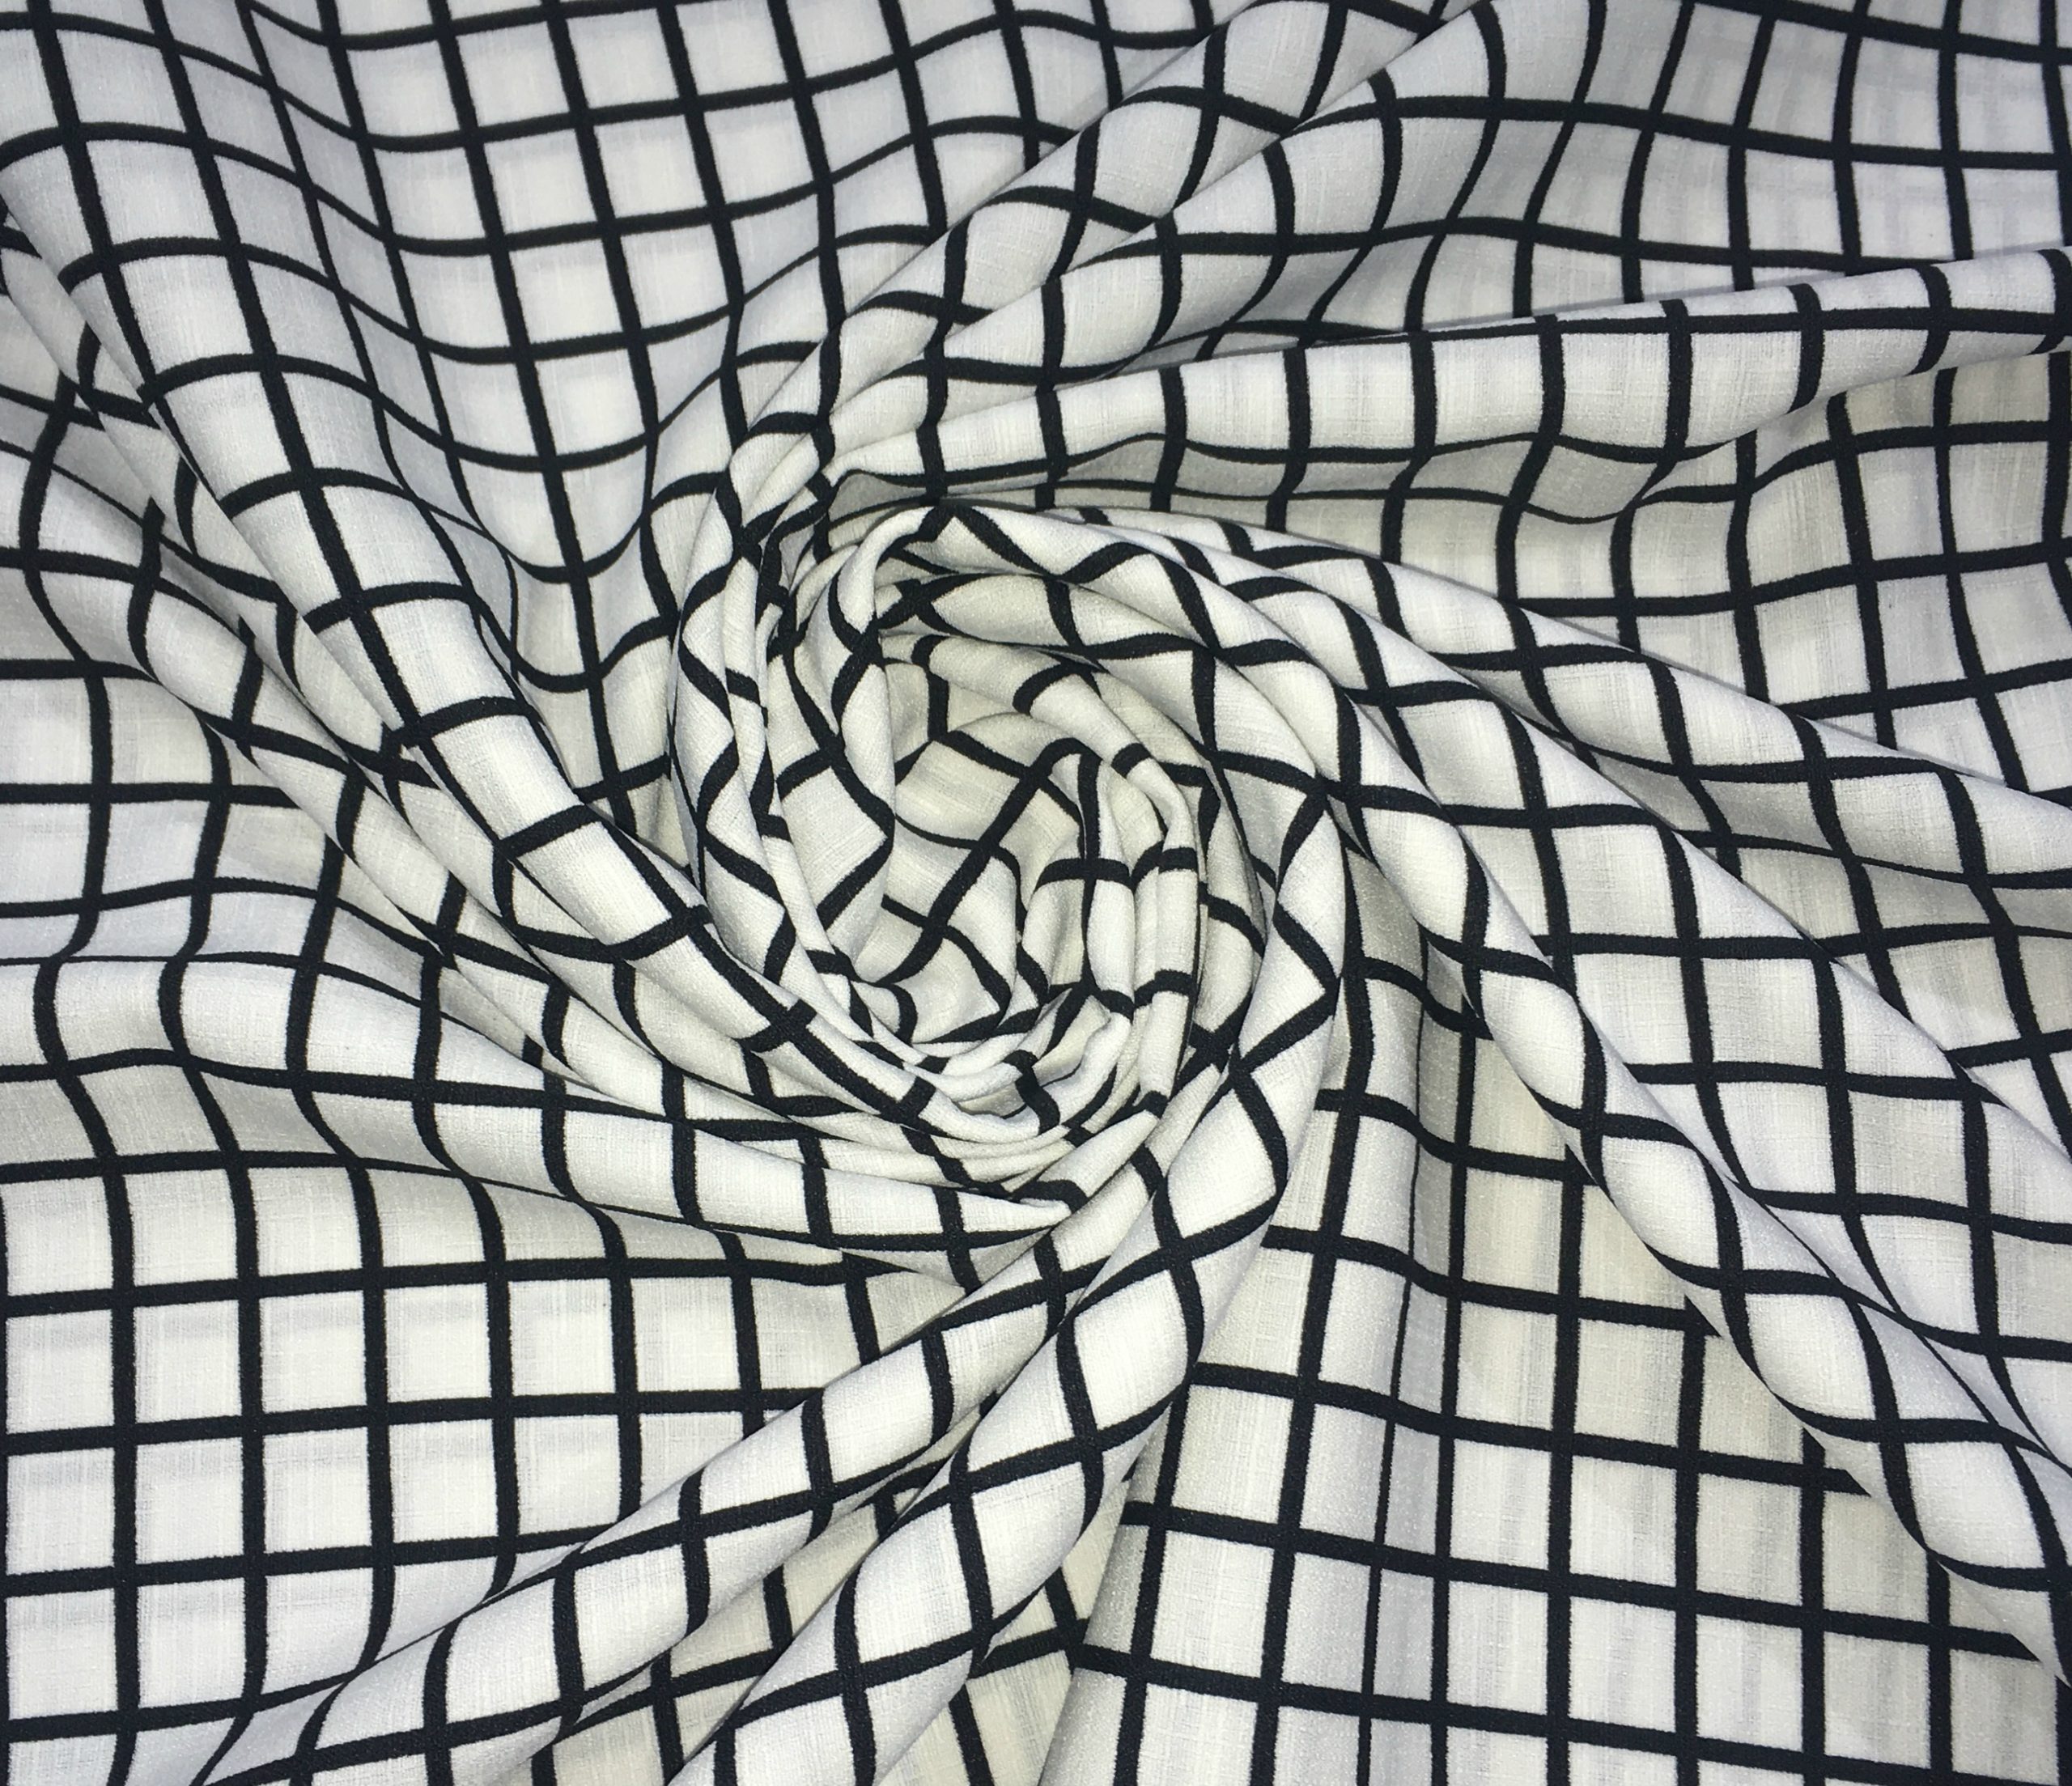 Georgette Slub Fabric Black Squares on White Dress Making Material